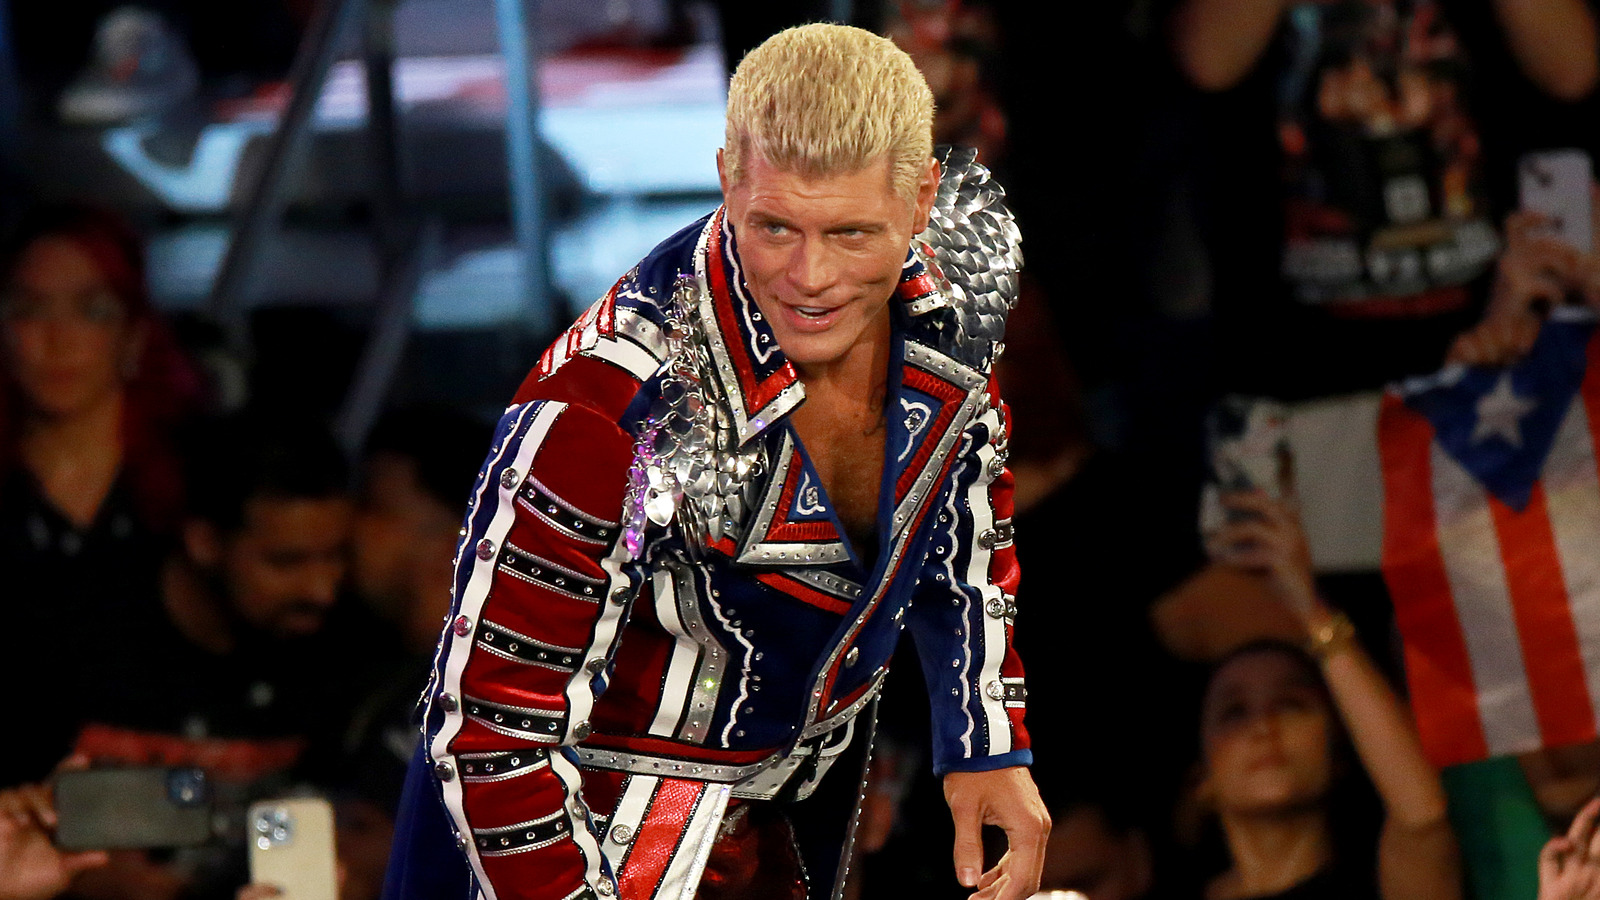 Bully Ray dice que el ascenso de Cody Rhodes a la superestrella del evento principal de la WWE es 'ladrillo a ladrillo'